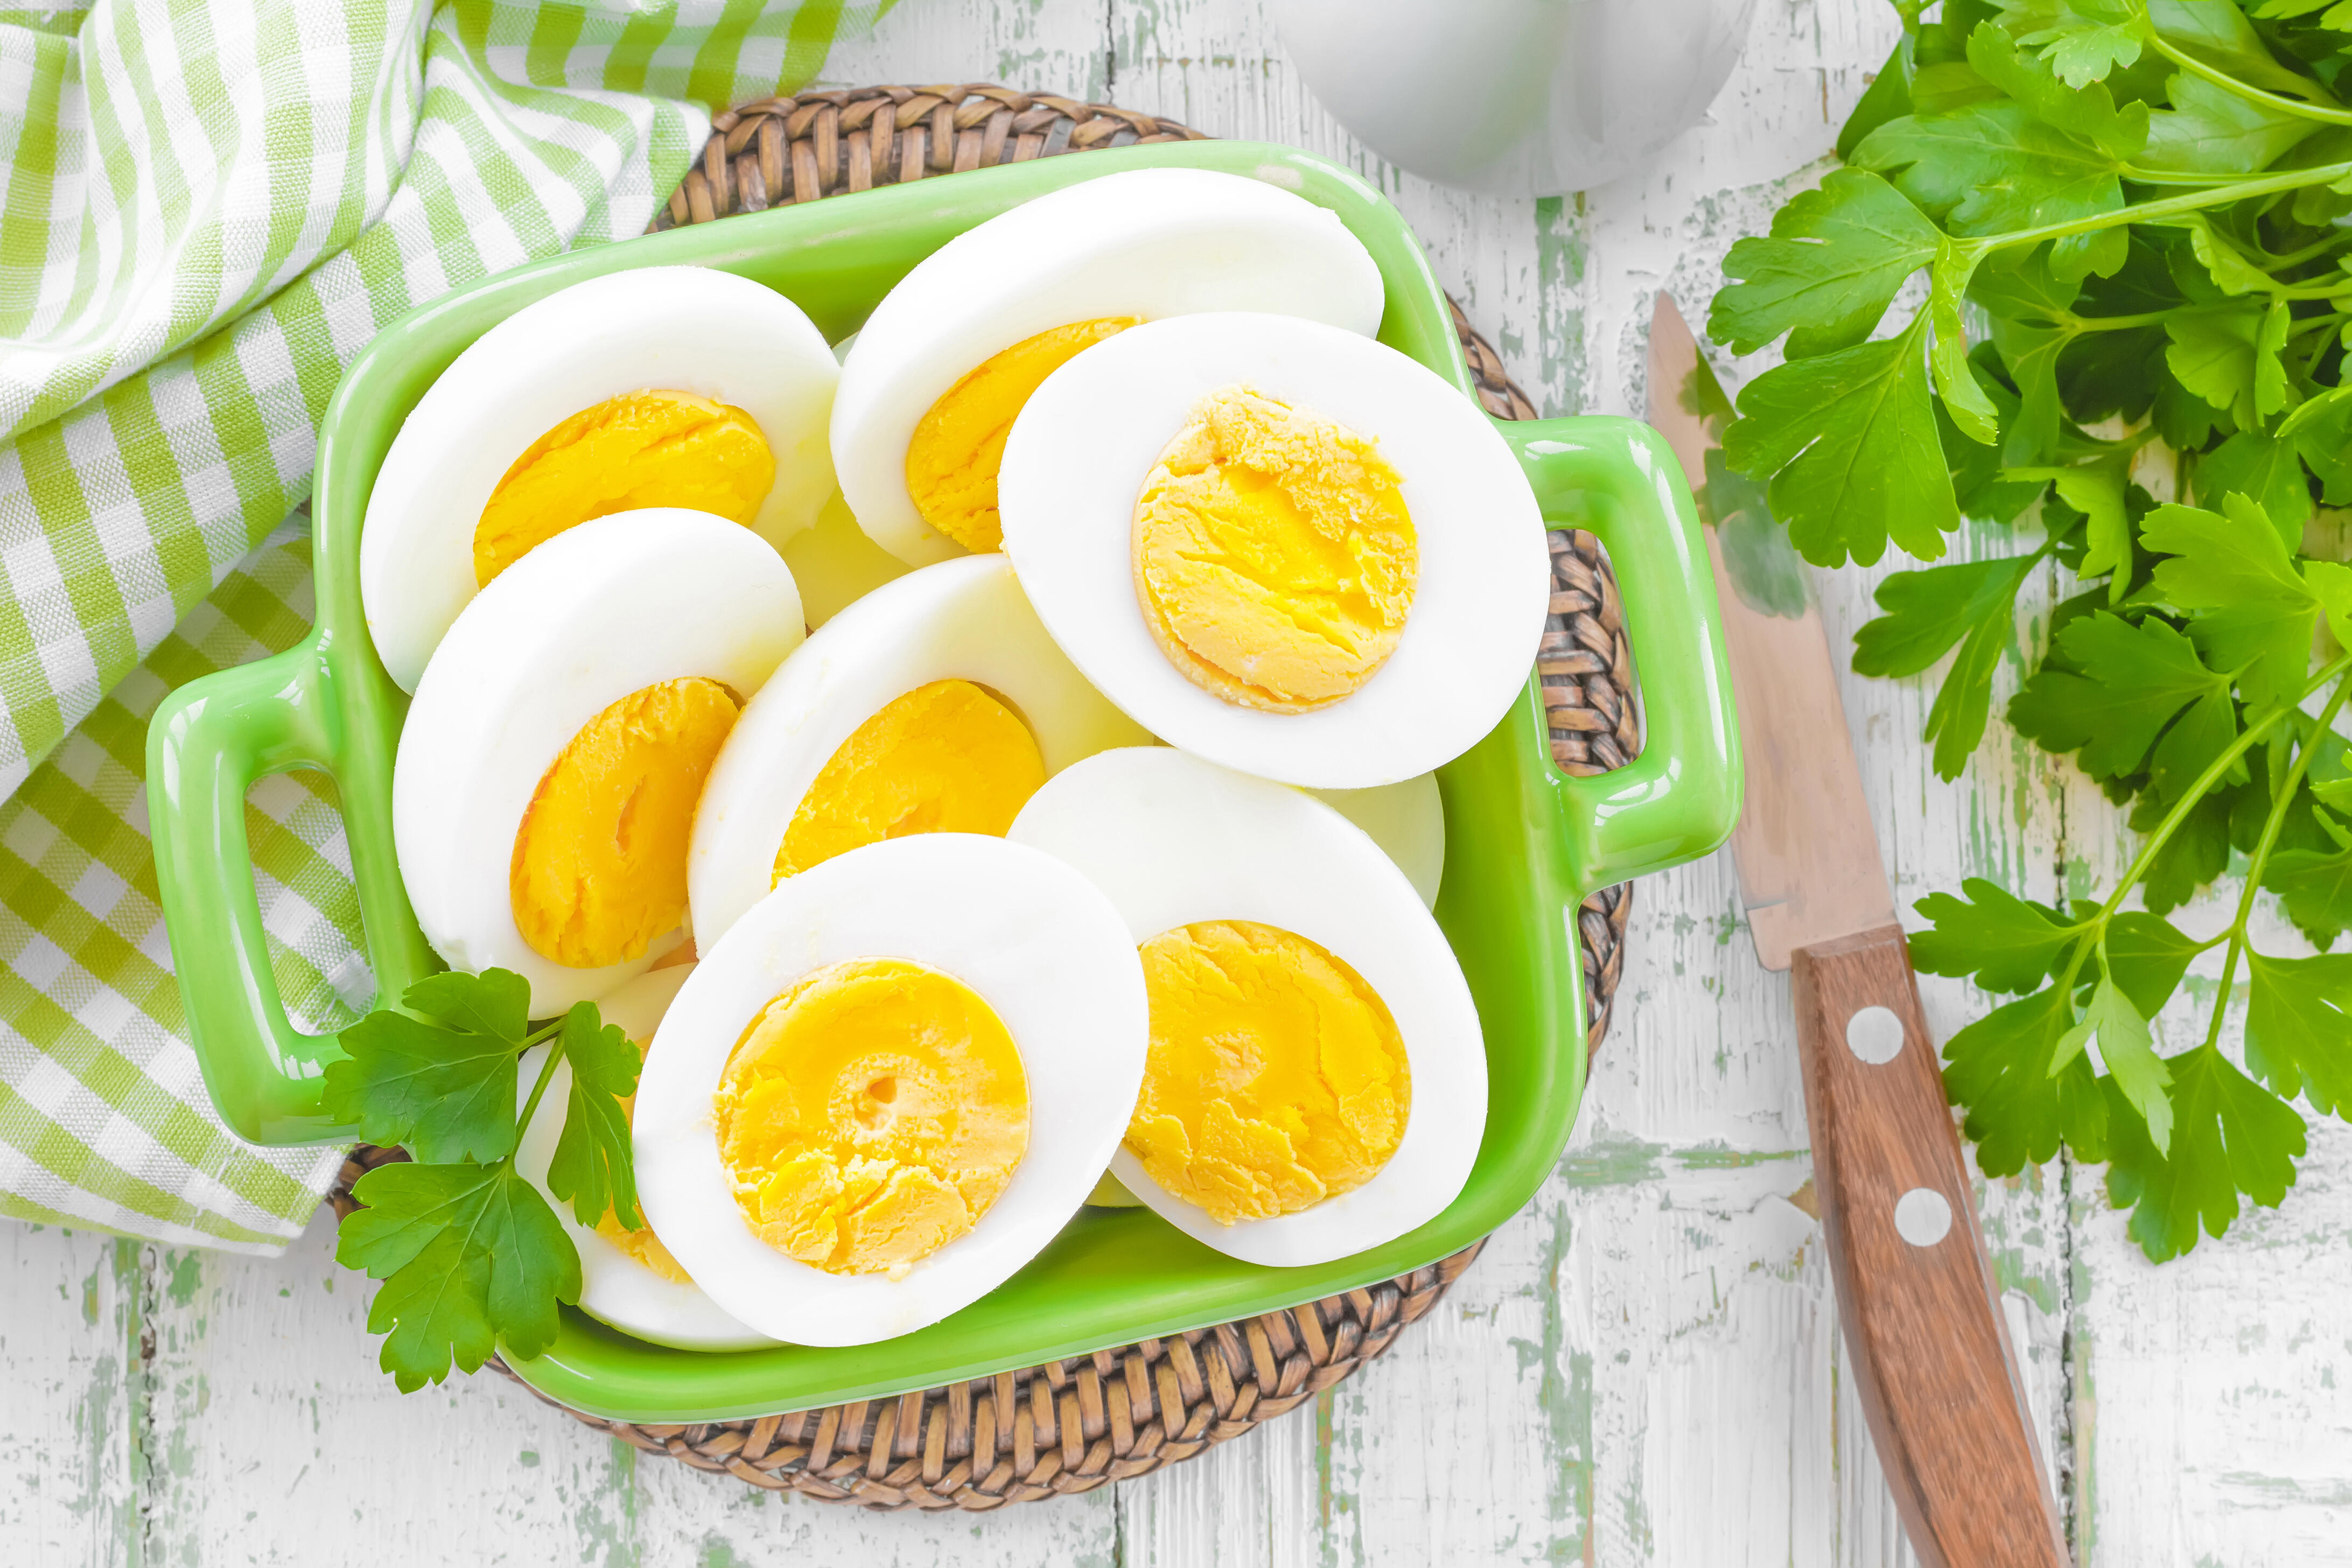 Bạn không nên ăn trứng gà nhiều mỗi ngày mà chỉ nên ăn khoảng 2 quả trứng/ngày